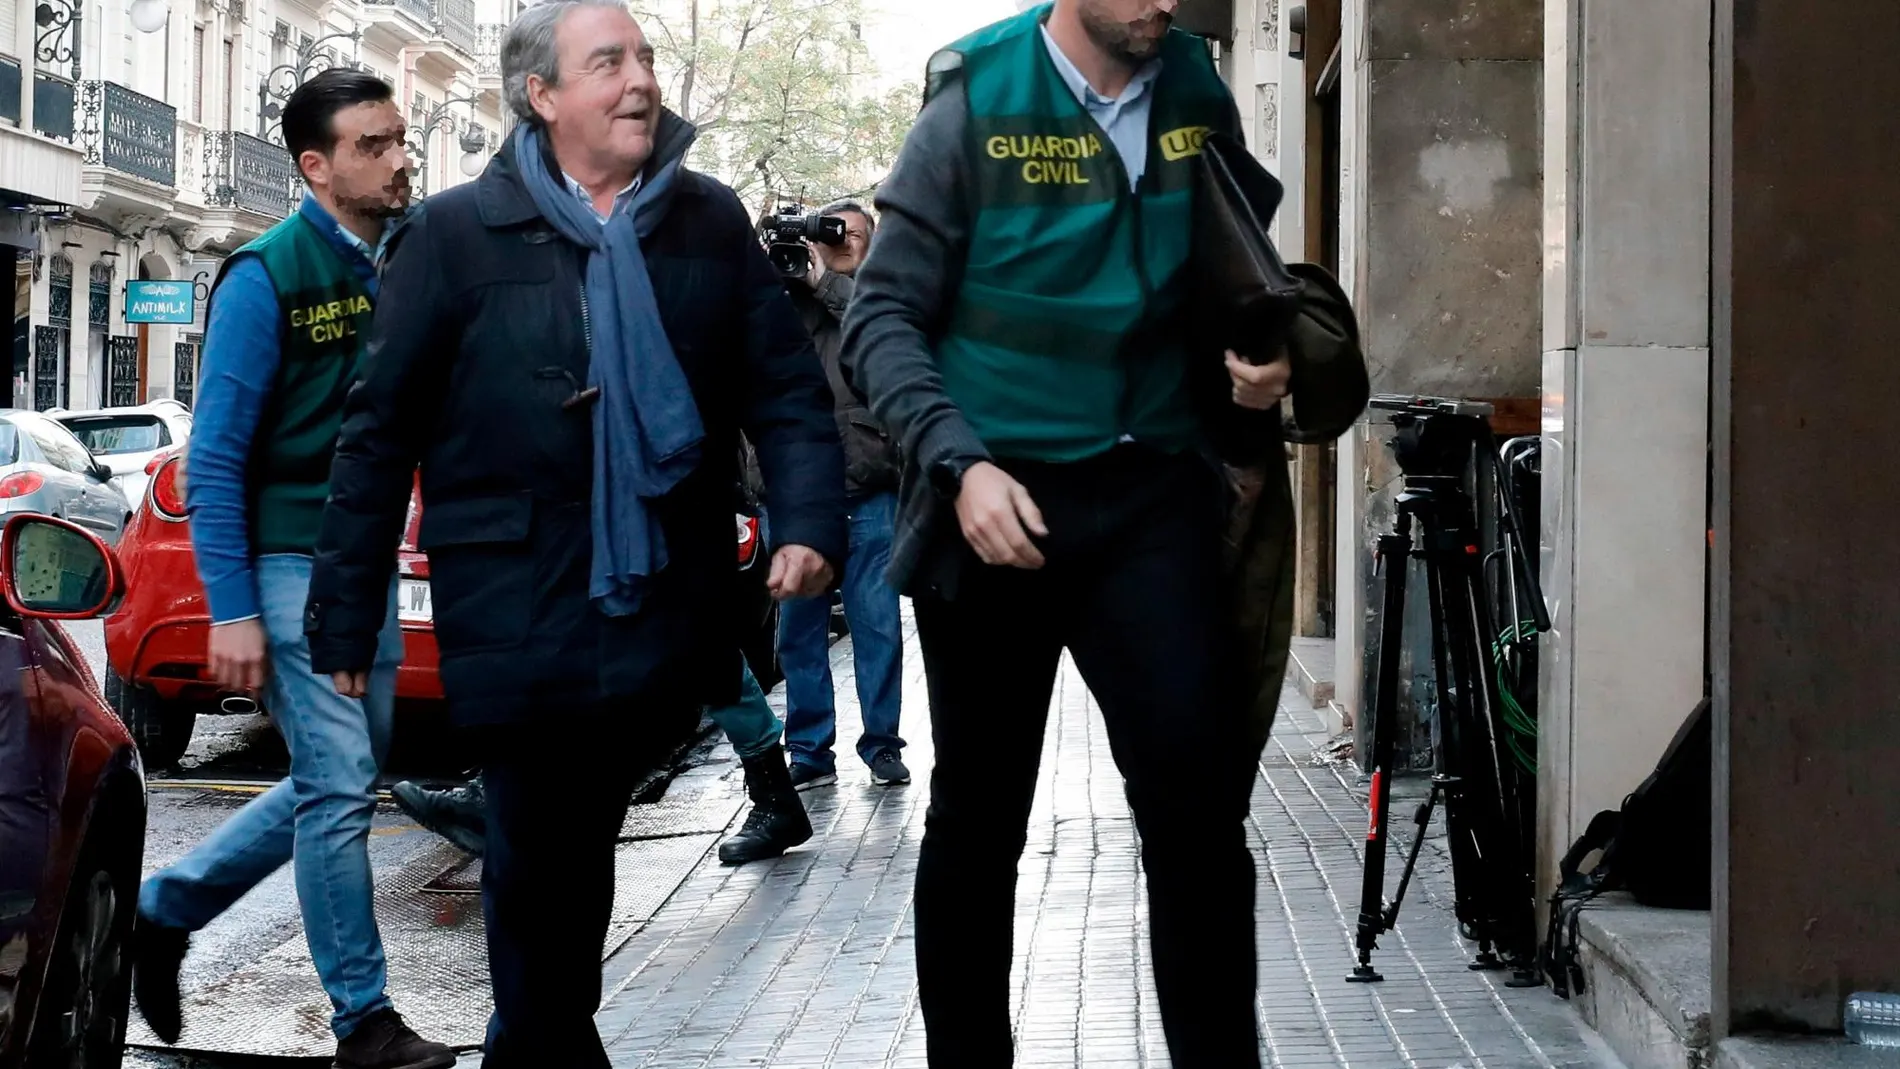 El abogado valenciano José María Corbín, principal implicado de la trama, era, al parecer, militante de Vox en 2019